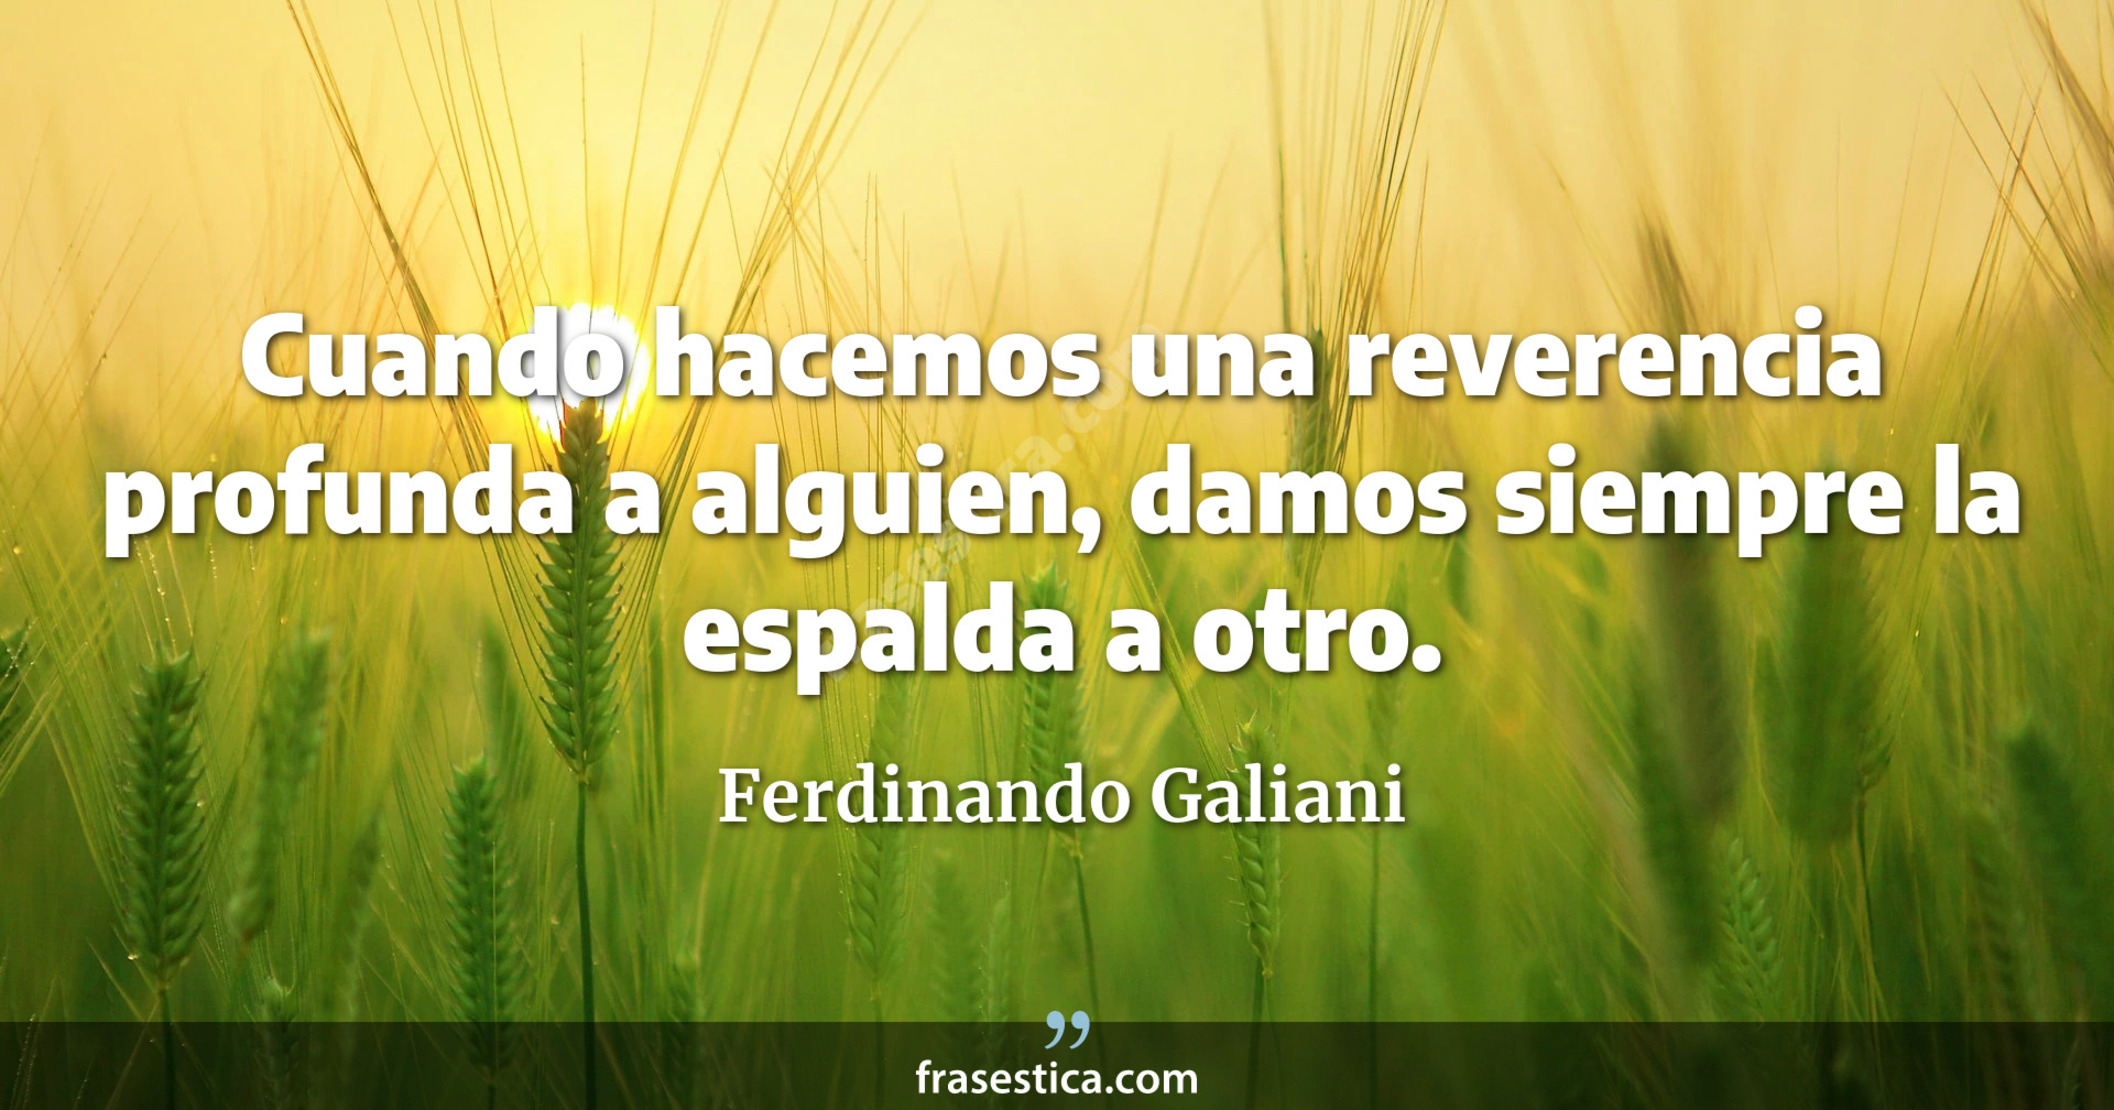 Cuando hacemos una reverencia profunda a alguien, damos siempre la espalda a otro. - Ferdinando Galiani